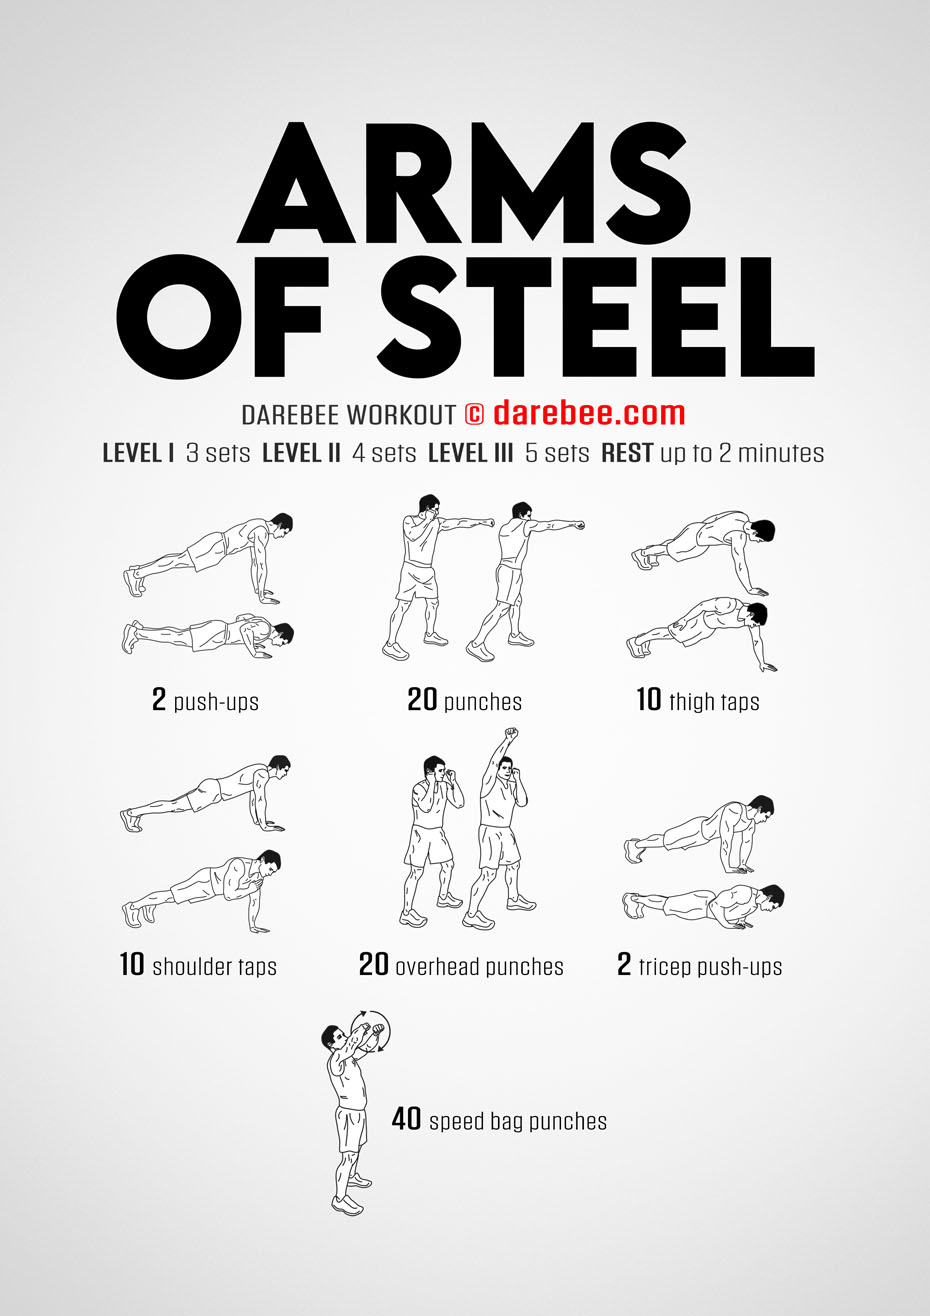 Intense Arm Workout No Equipment - WorkoutWalls